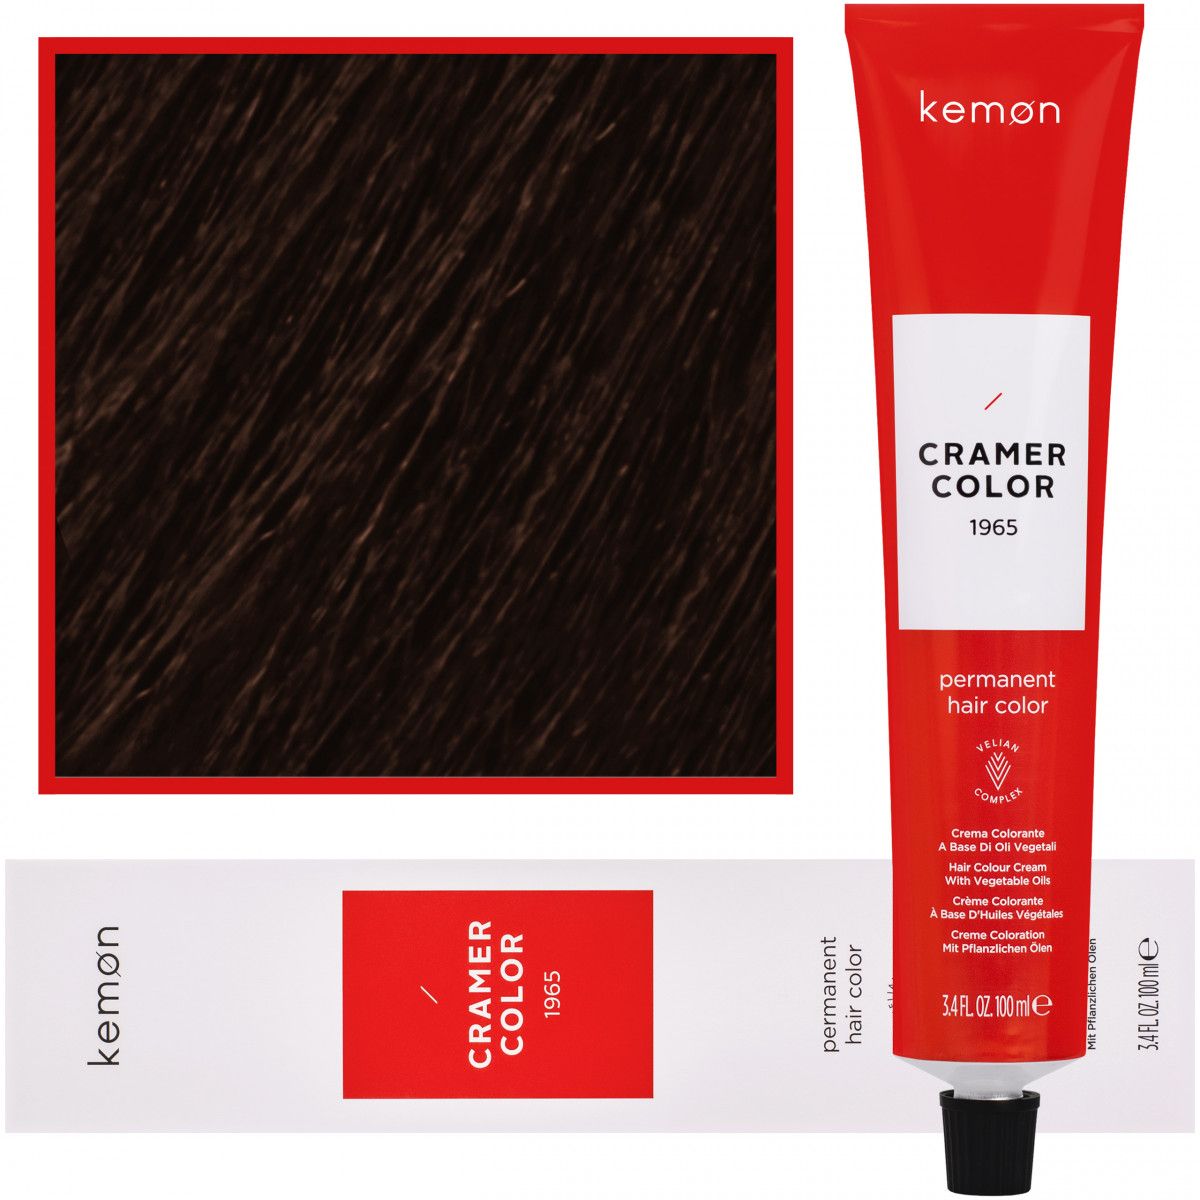 Kemon Cramer Color farba 100ml kolor 4,0 | Śródziemnomorski Naturalny Brąz